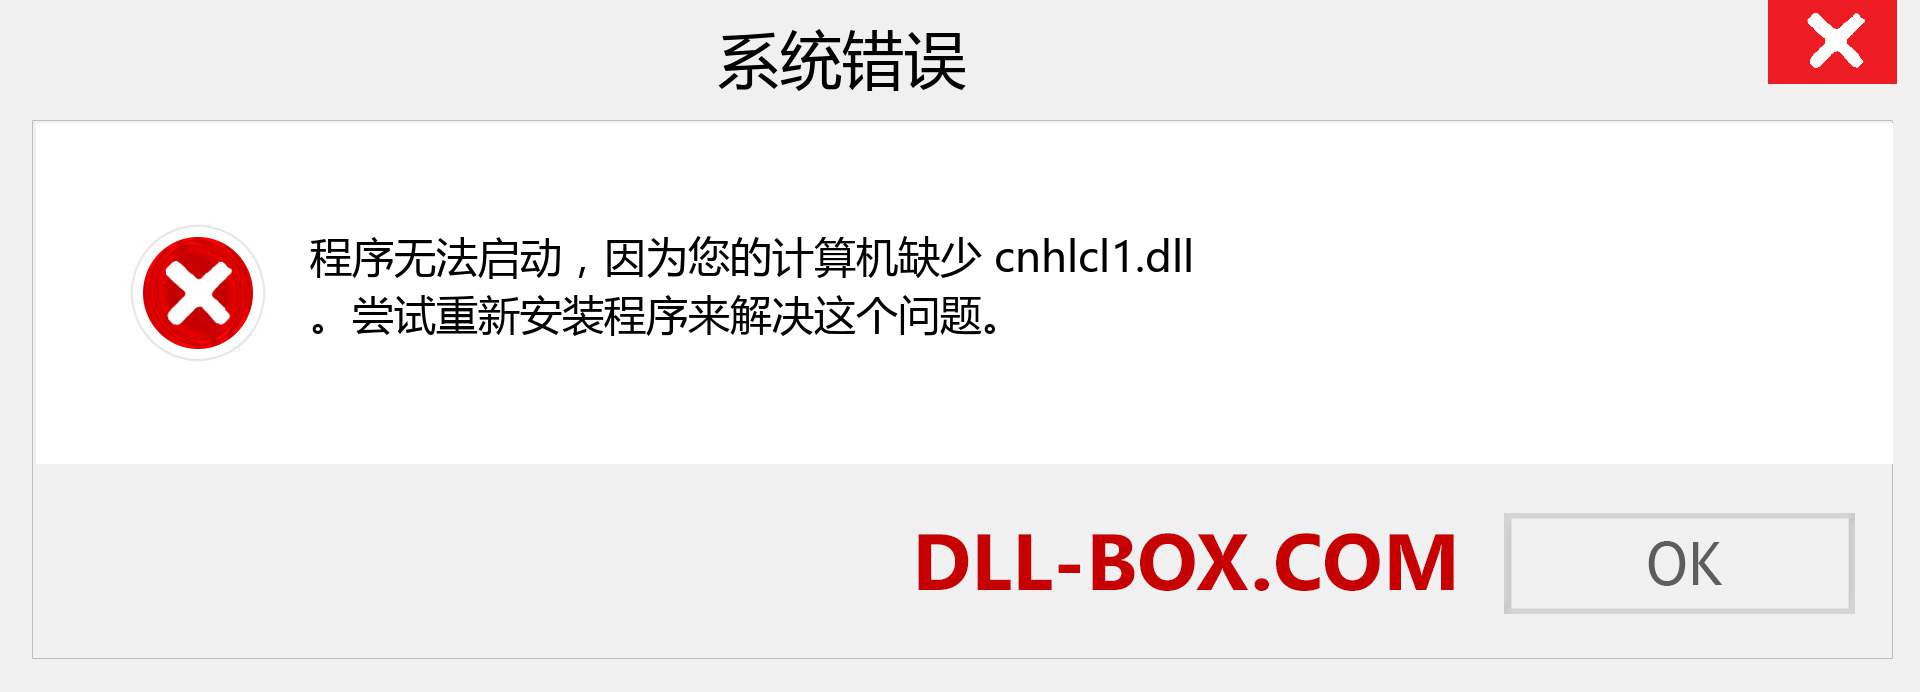 cnhlcl1.dll 文件丢失？。 适用于 Windows 7、8、10 的下载 - 修复 Windows、照片、图像上的 cnhlcl1 dll 丢失错误